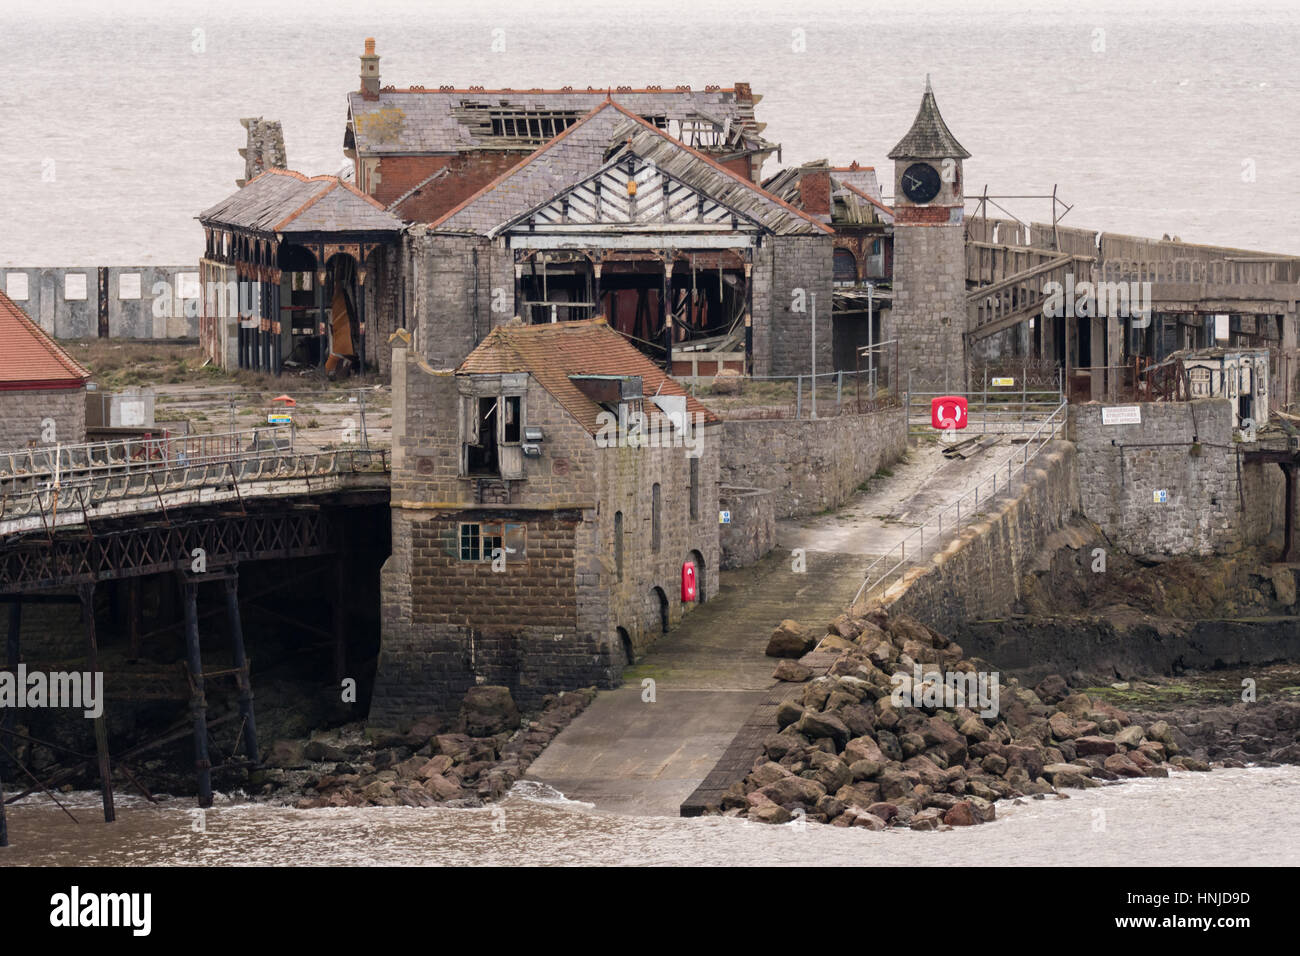 Birnbeck Pier, Weston-Super-Mare, Somerset, UK. Baufälligen Pier im Südwesten Englands.  Die historische Struktur ist das Ziel der Erhaltung Kampagne Stockfoto